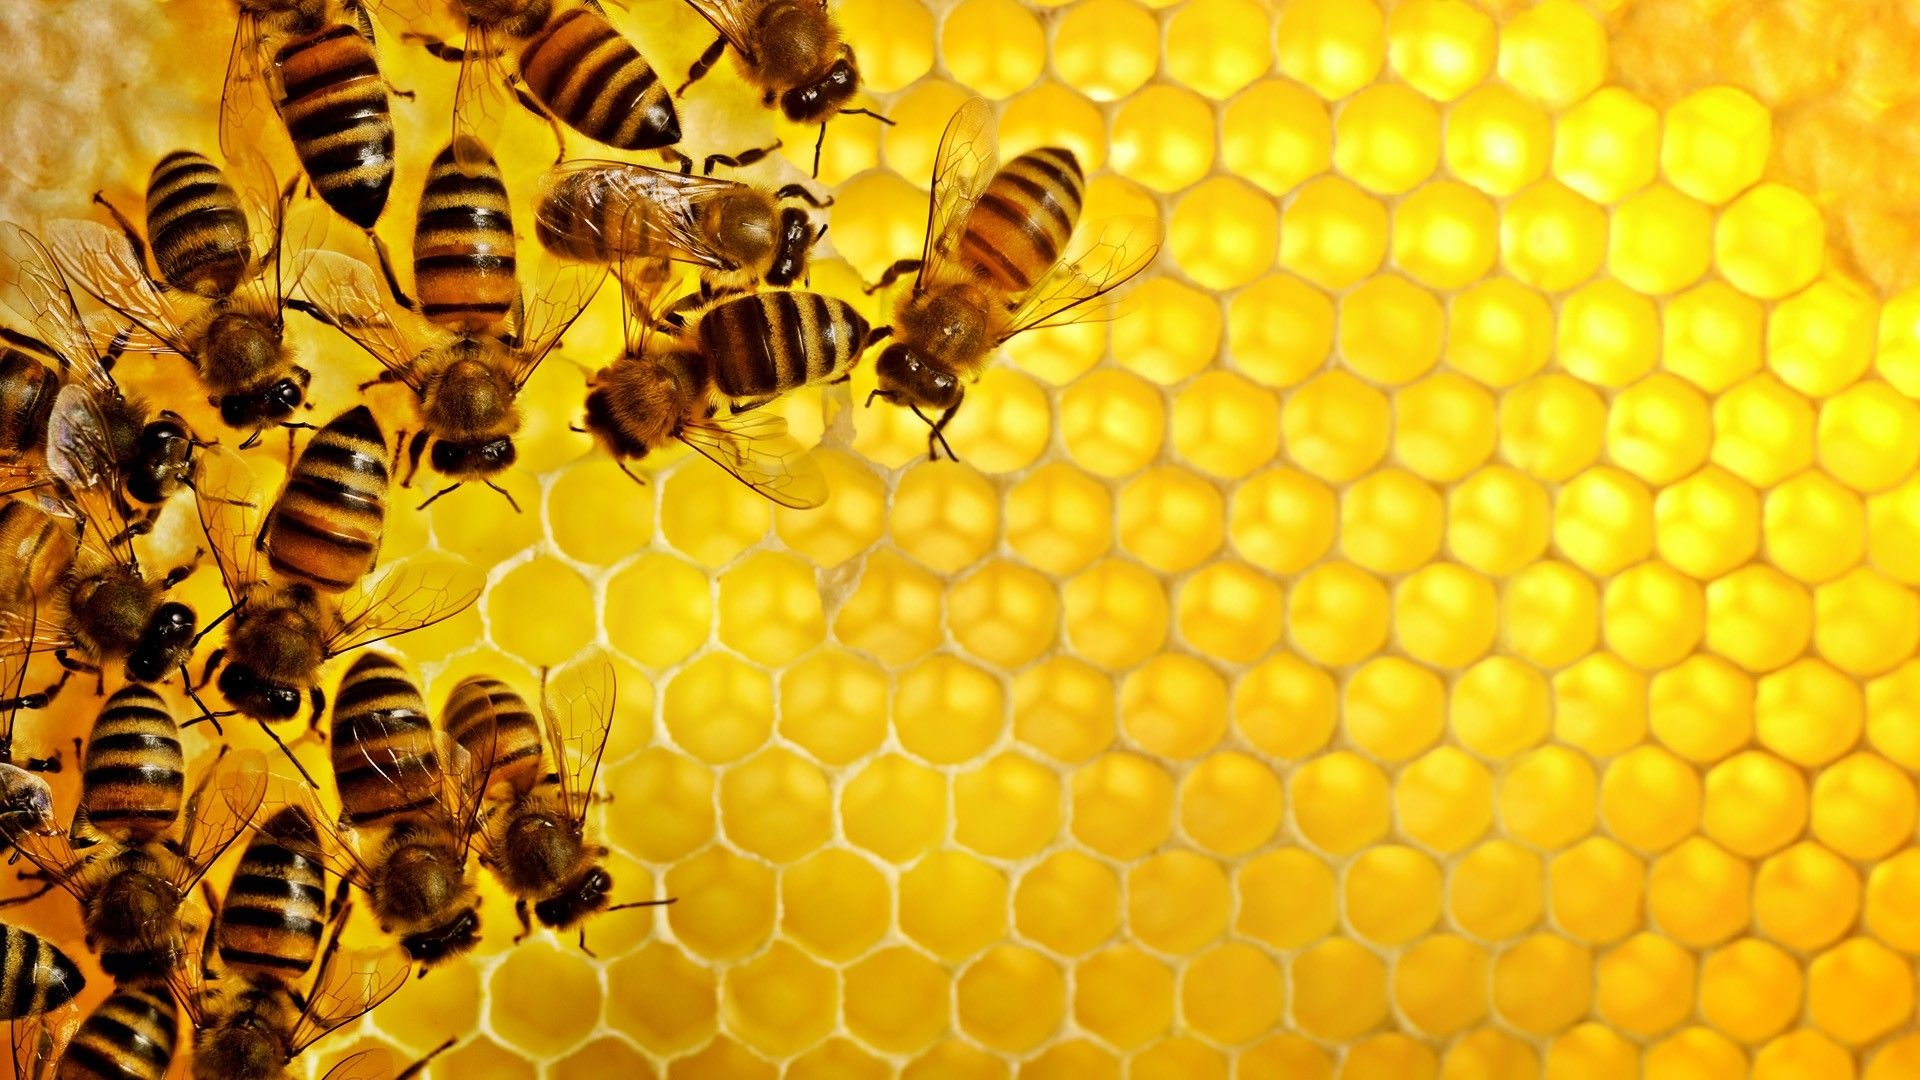 Beehive, bee desktop wallpapers, Nature, 1920x1080 Full HD Desktop